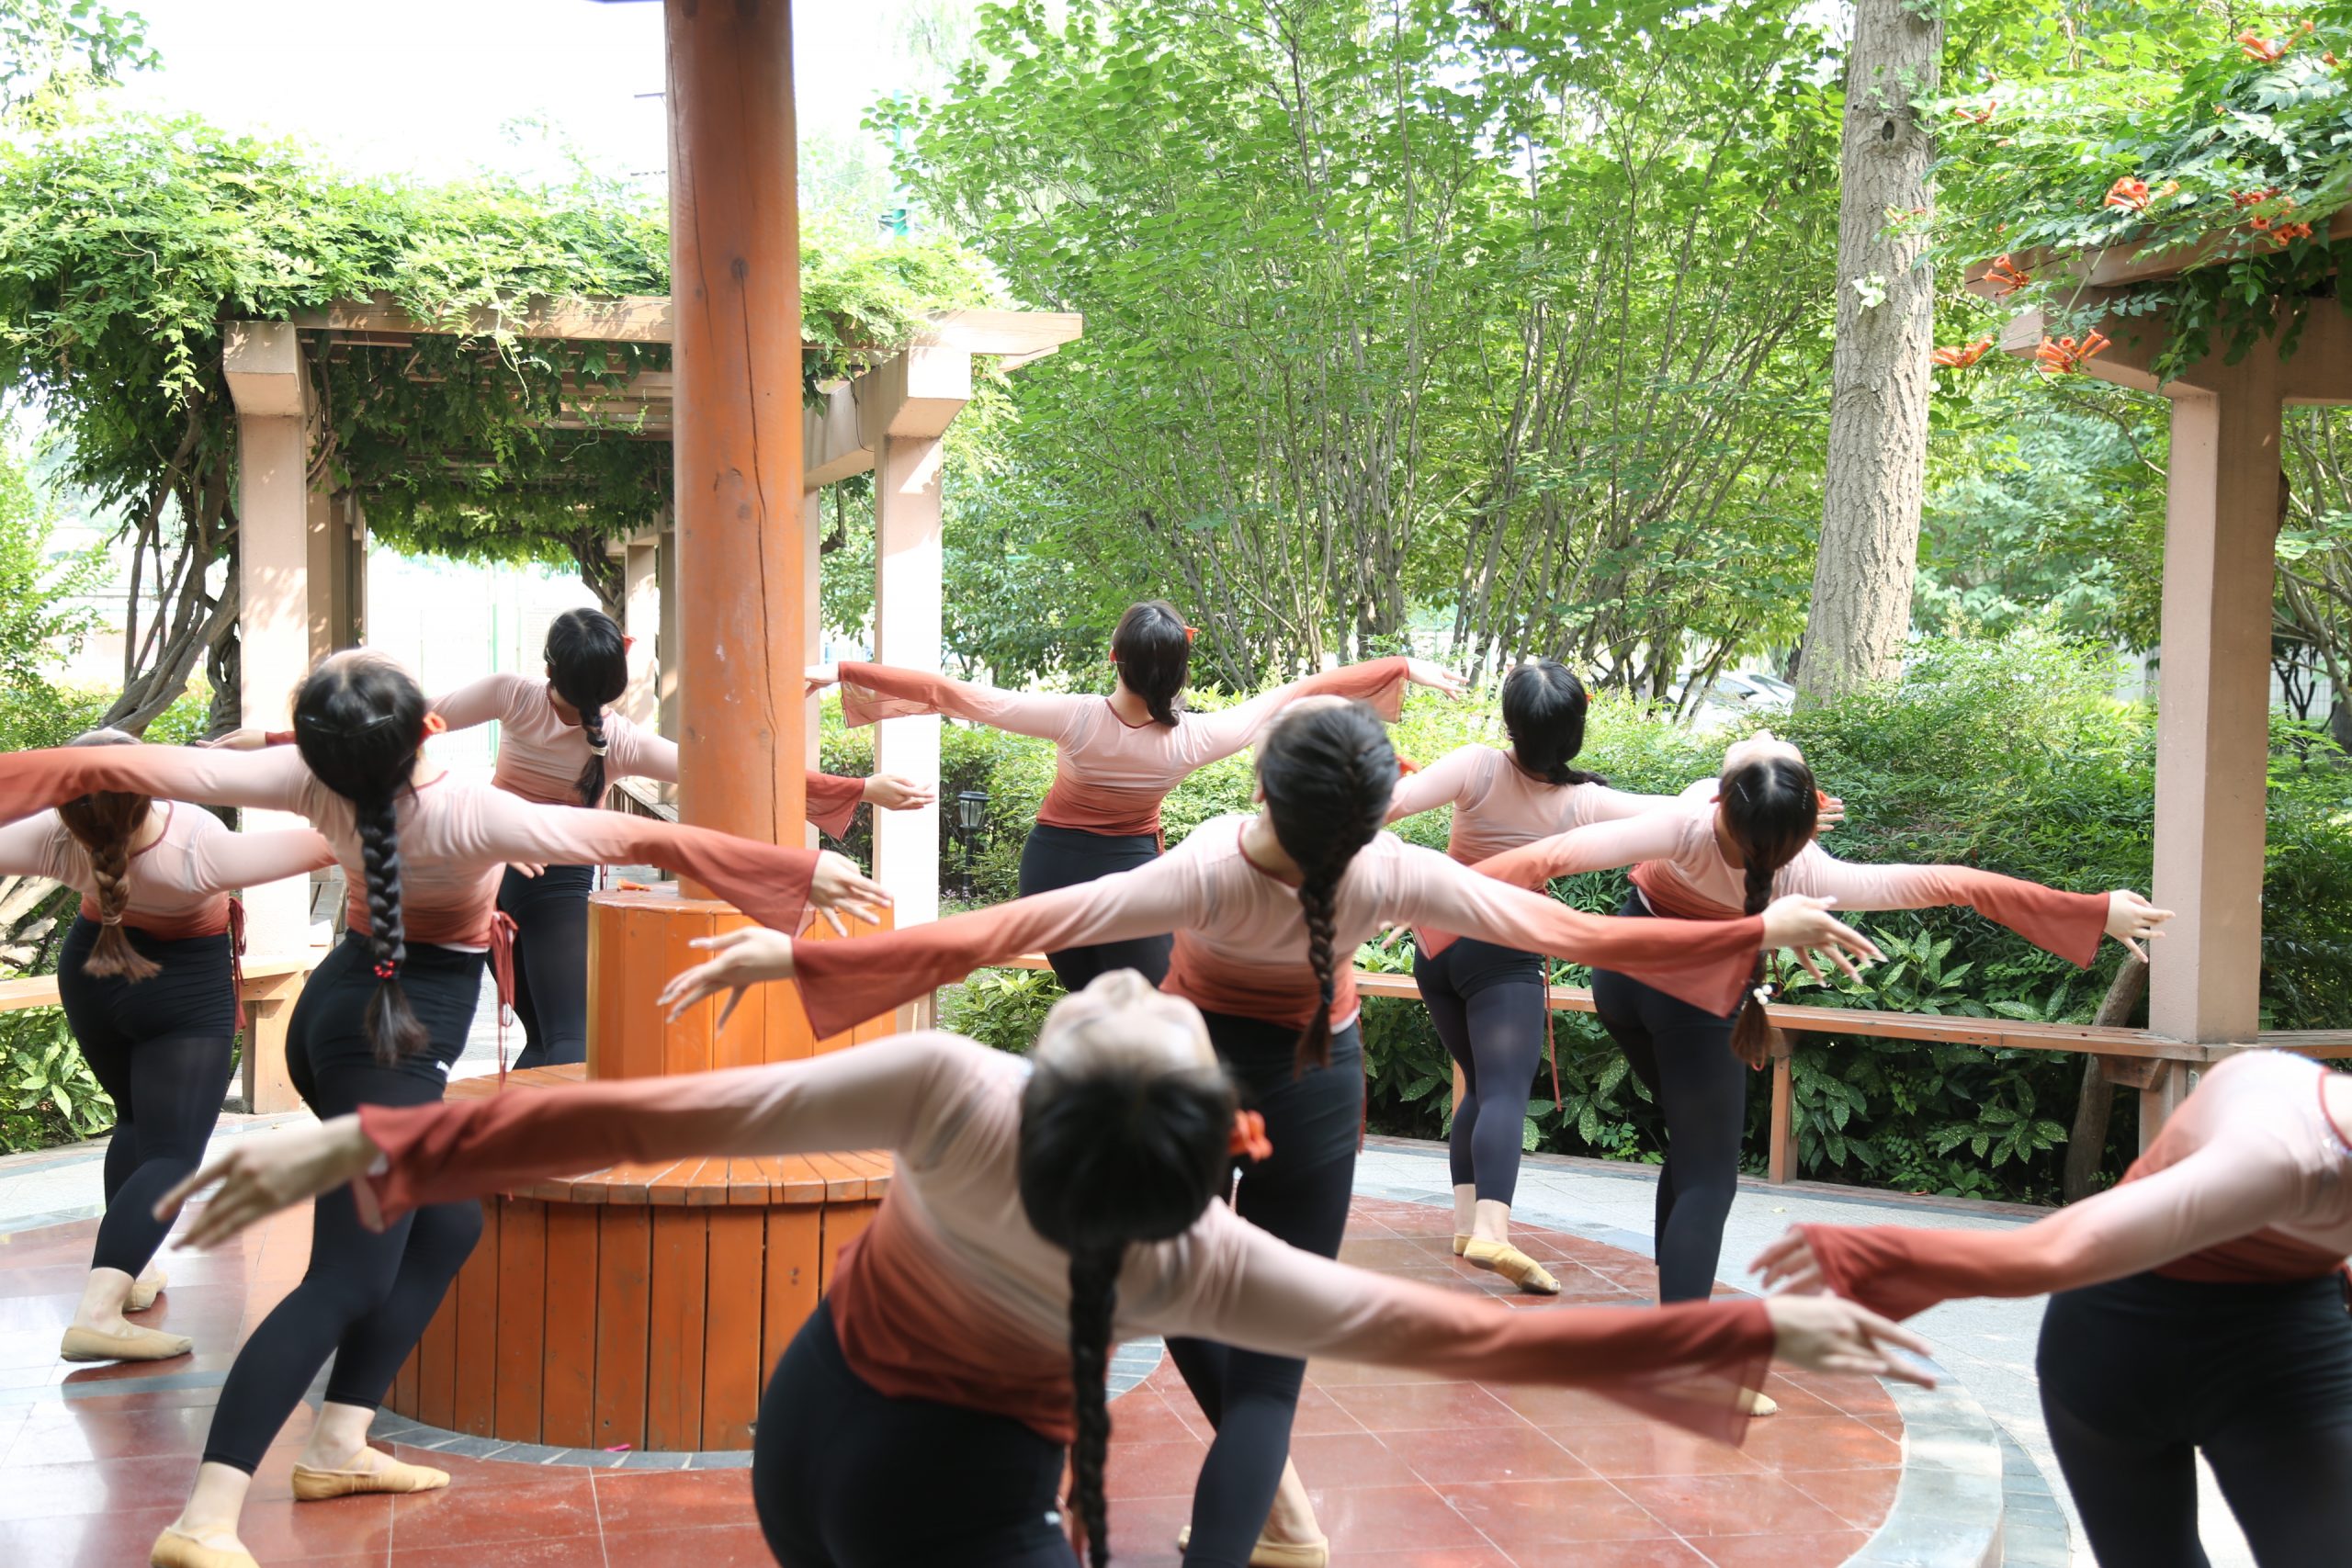 舞蹈表演专业的同学们在校园拍照留念 (http://www.xifumi.com/) 校内新闻 第1张